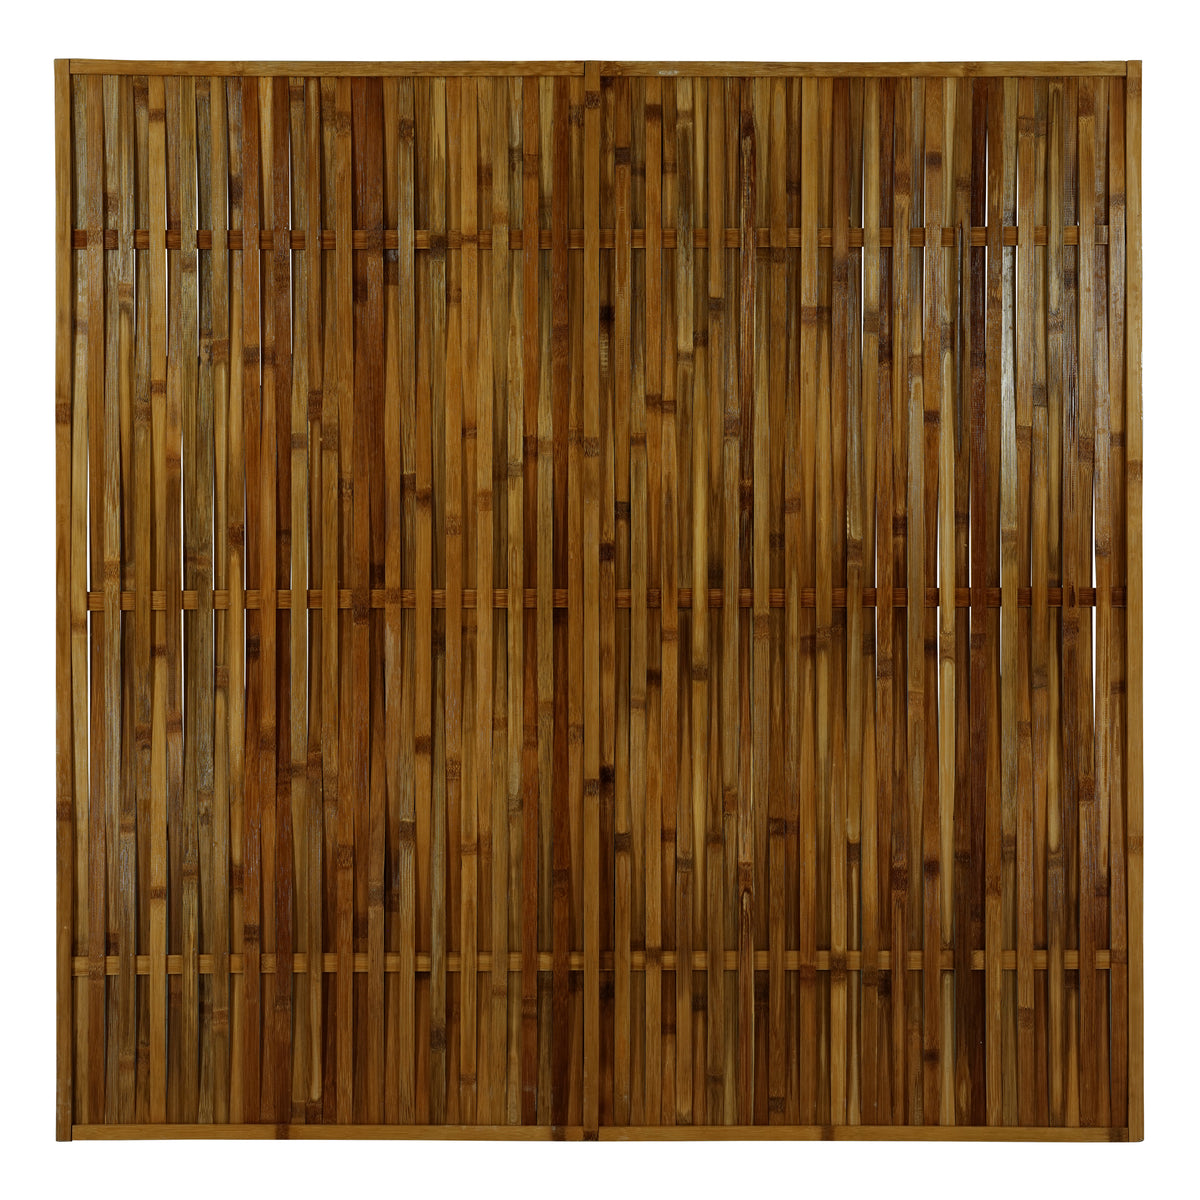 Oplétaný bambusový plot